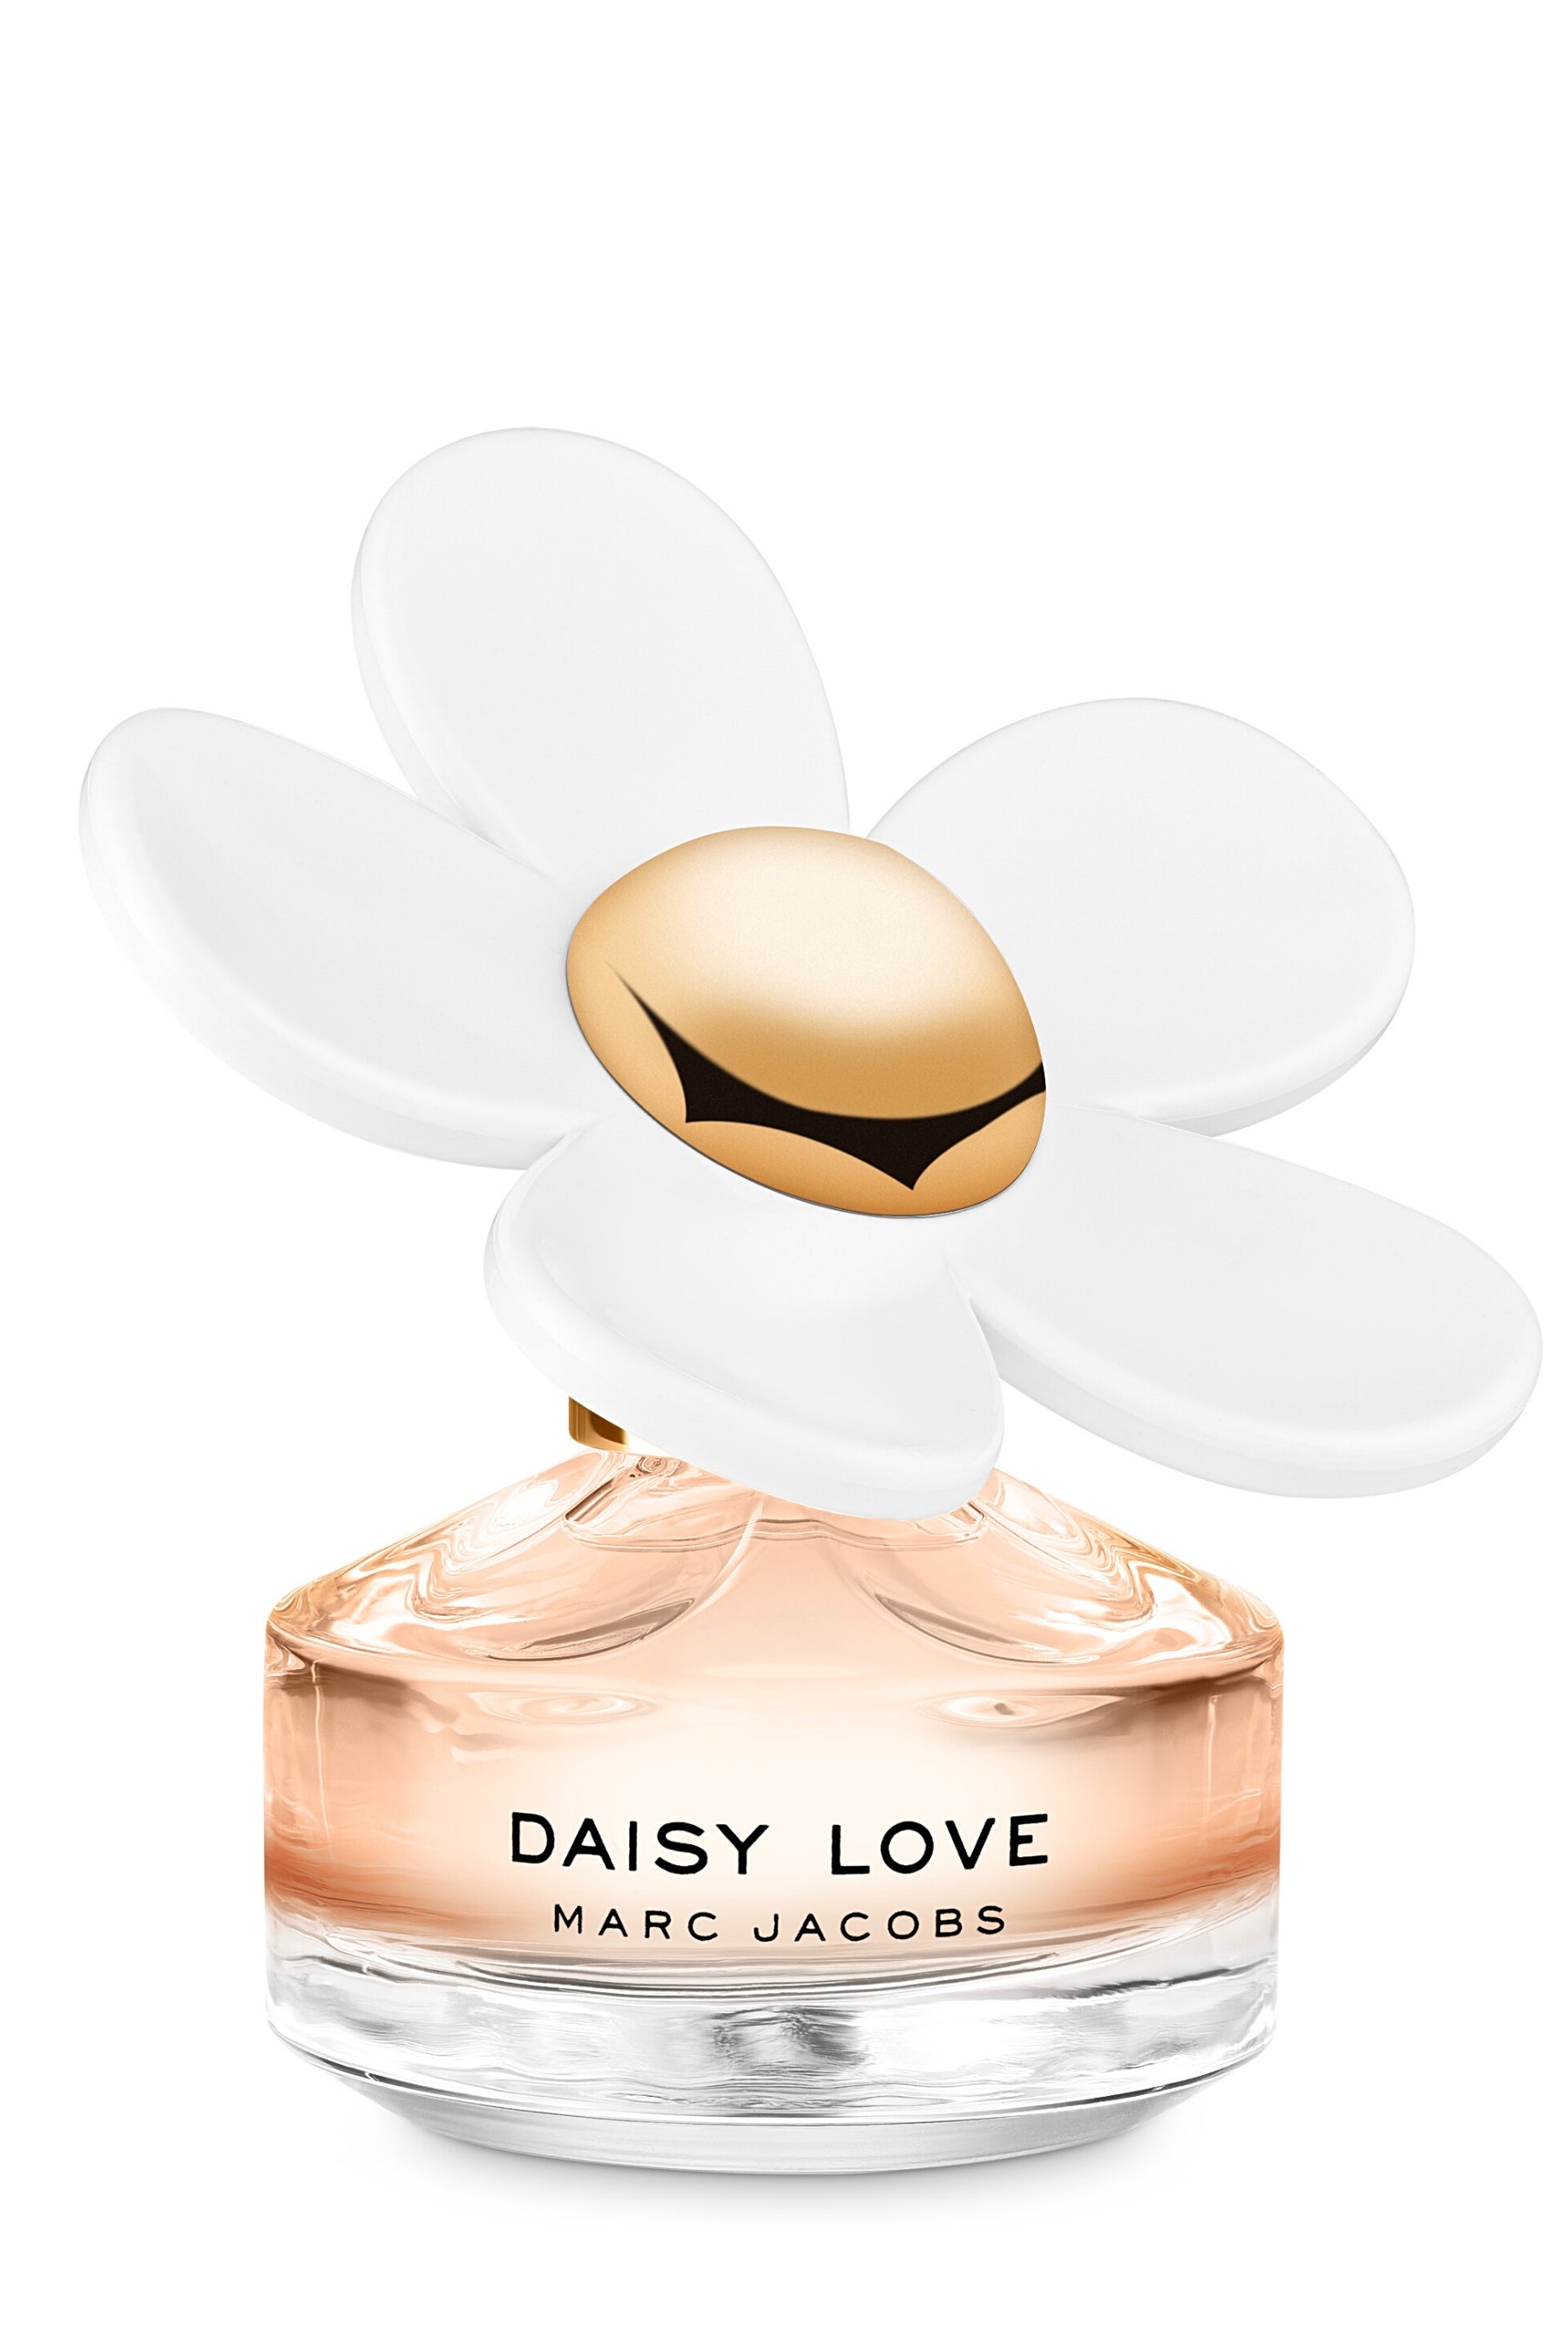 katje Associëren Onbelangrijk Daisy Love Perfume | Marc Jacobs | REBL Scents